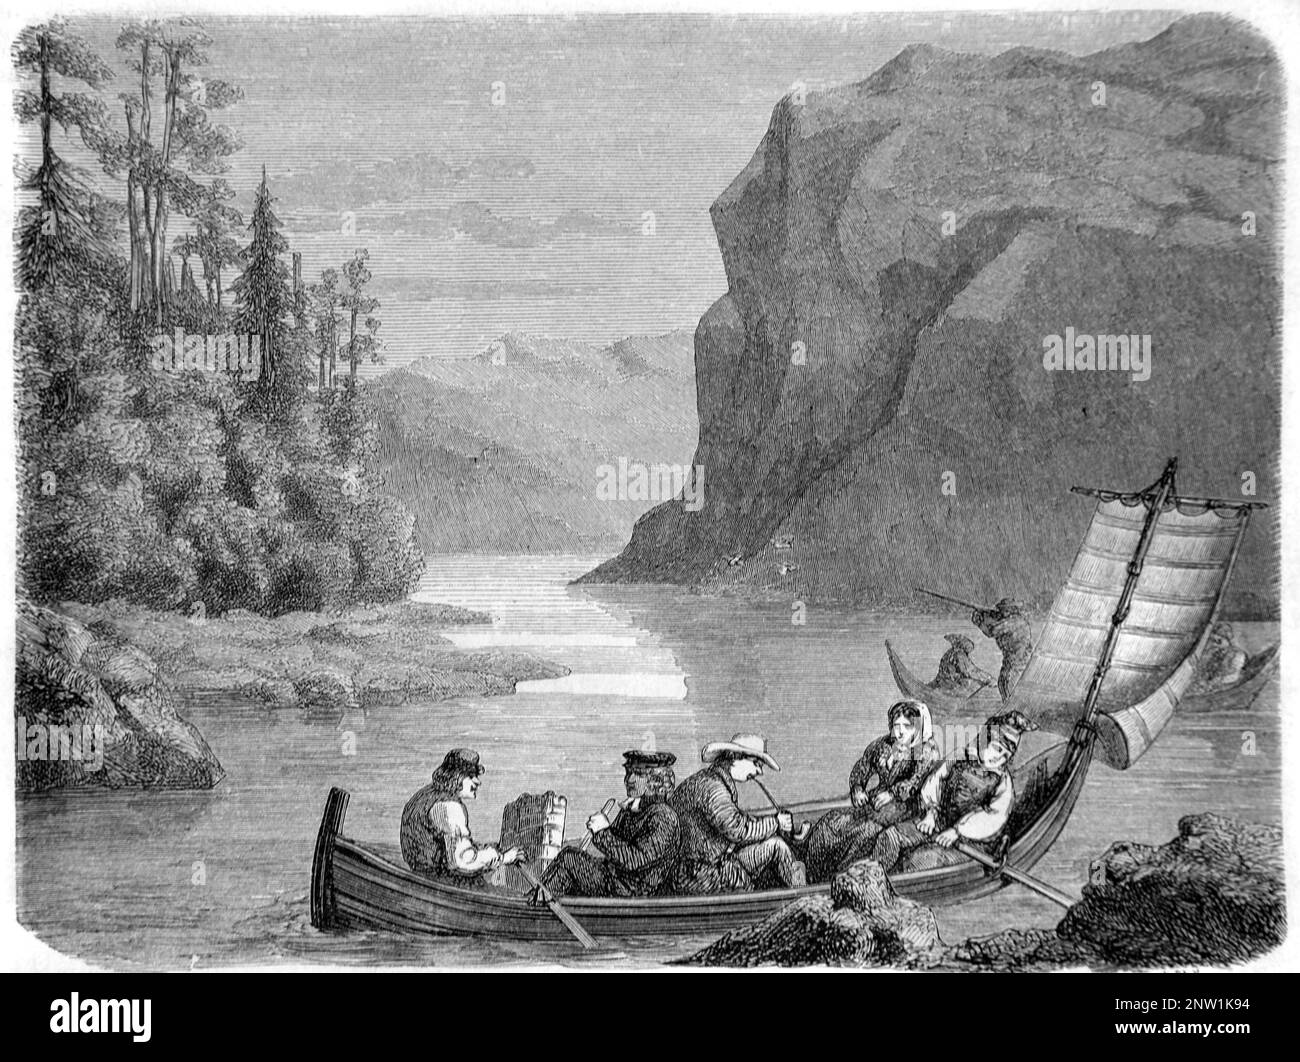 Botes de remo en el lago Skalka con las montañas escandinavas, o Scandes, Jokkmokk, Laponia o Sapmi región de Suecia. Grabado vintage o ilustración 1862 Foto de stock